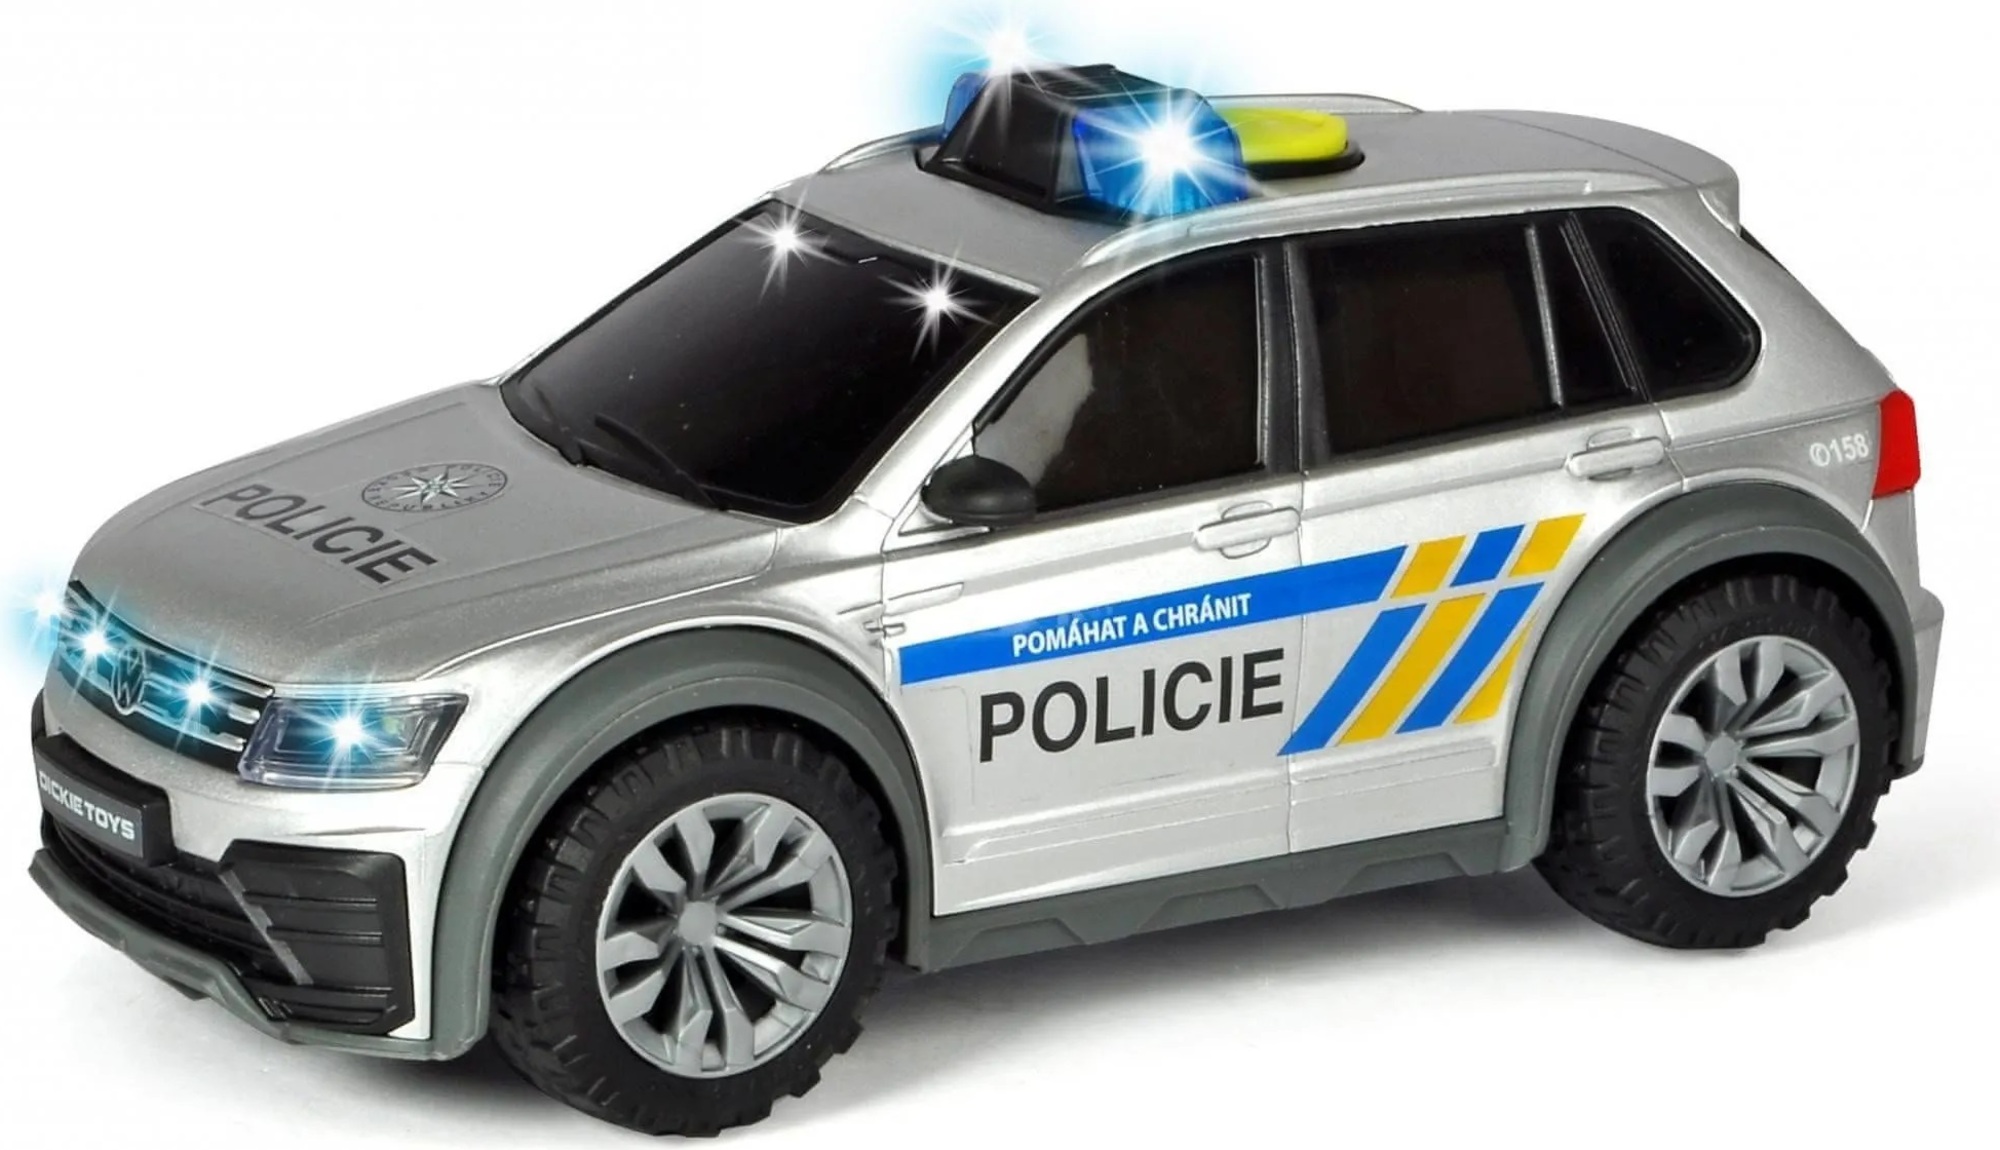 Dickie Policejní auto VW Tiguan R-Line, česká verze